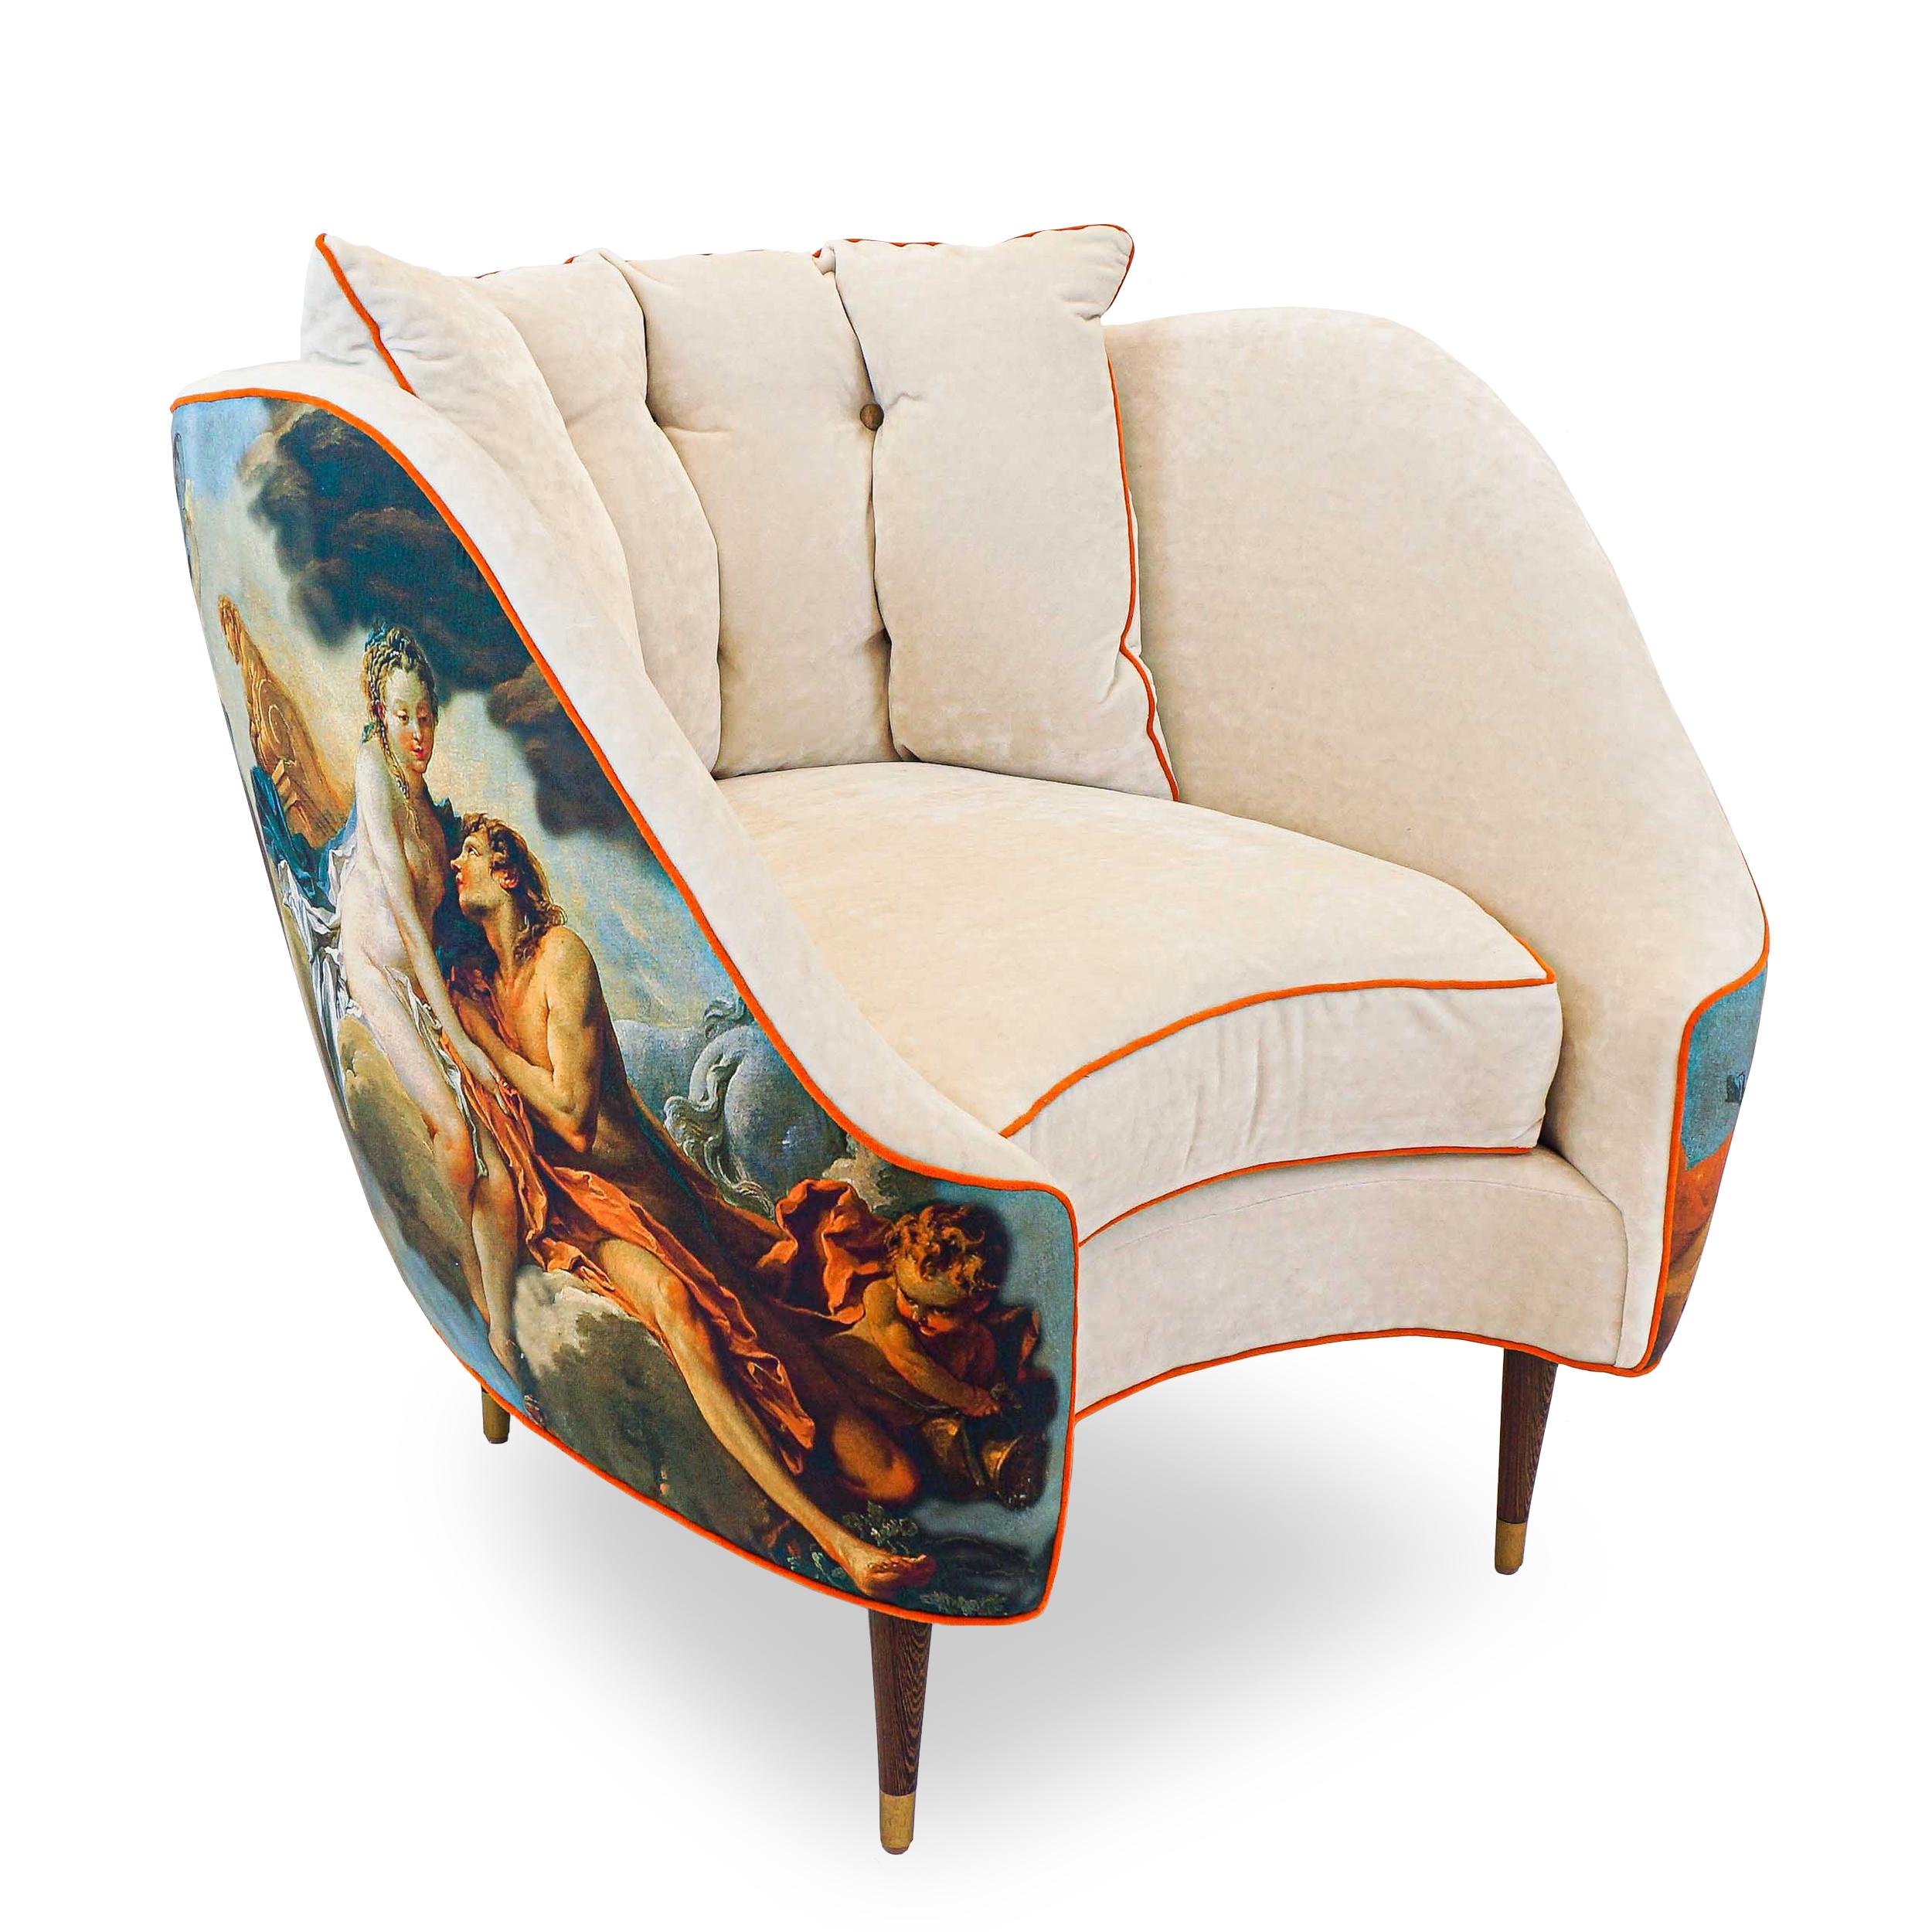 Dieser höchst originelle Stuhl im Eimerstil ist ein Beispiel für unseren neuartigen Einsatz von Formen im Möbeldesign und störenden Stoffarrangements. Bezogen mit einer Kombination aus einem bedruckten Pierre Frey-Stoff in einer Adaption eines